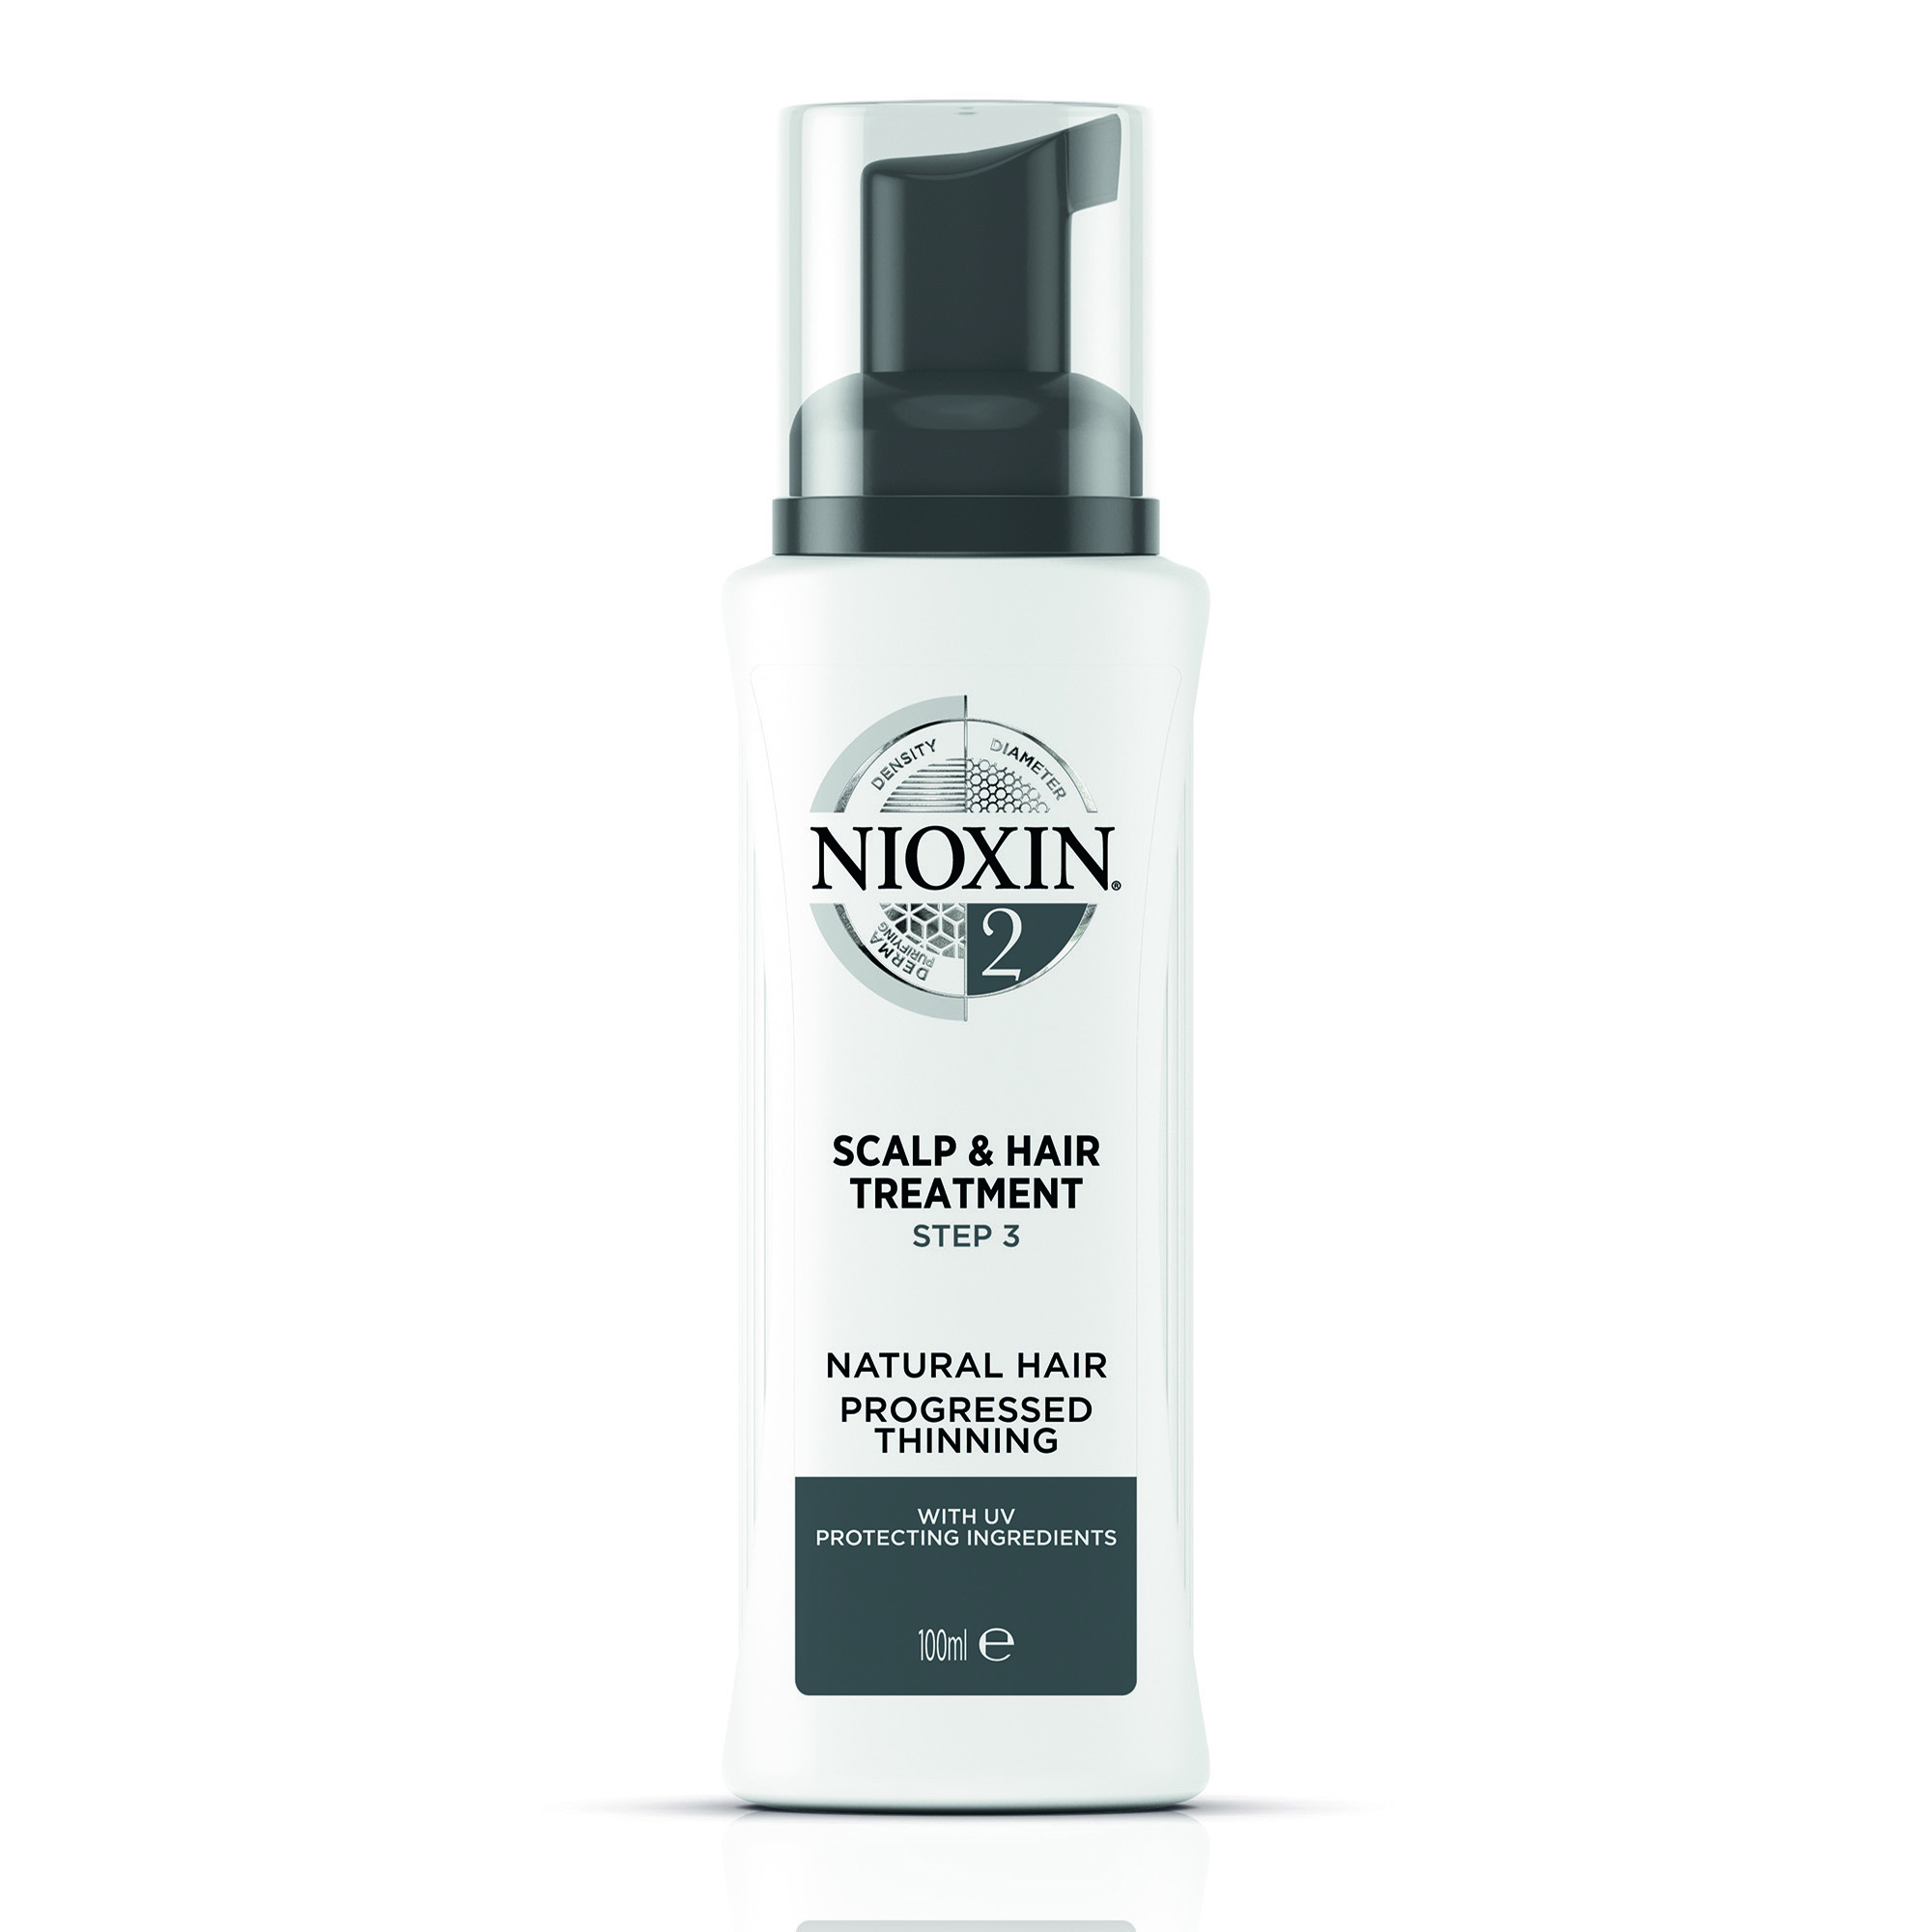 NIOXIN Маска питательная для тонких натуральных, заметно редеющих волос, Система 2, 100 мл purenskin маска для лица c экстрактом авокадо питательная 23 0